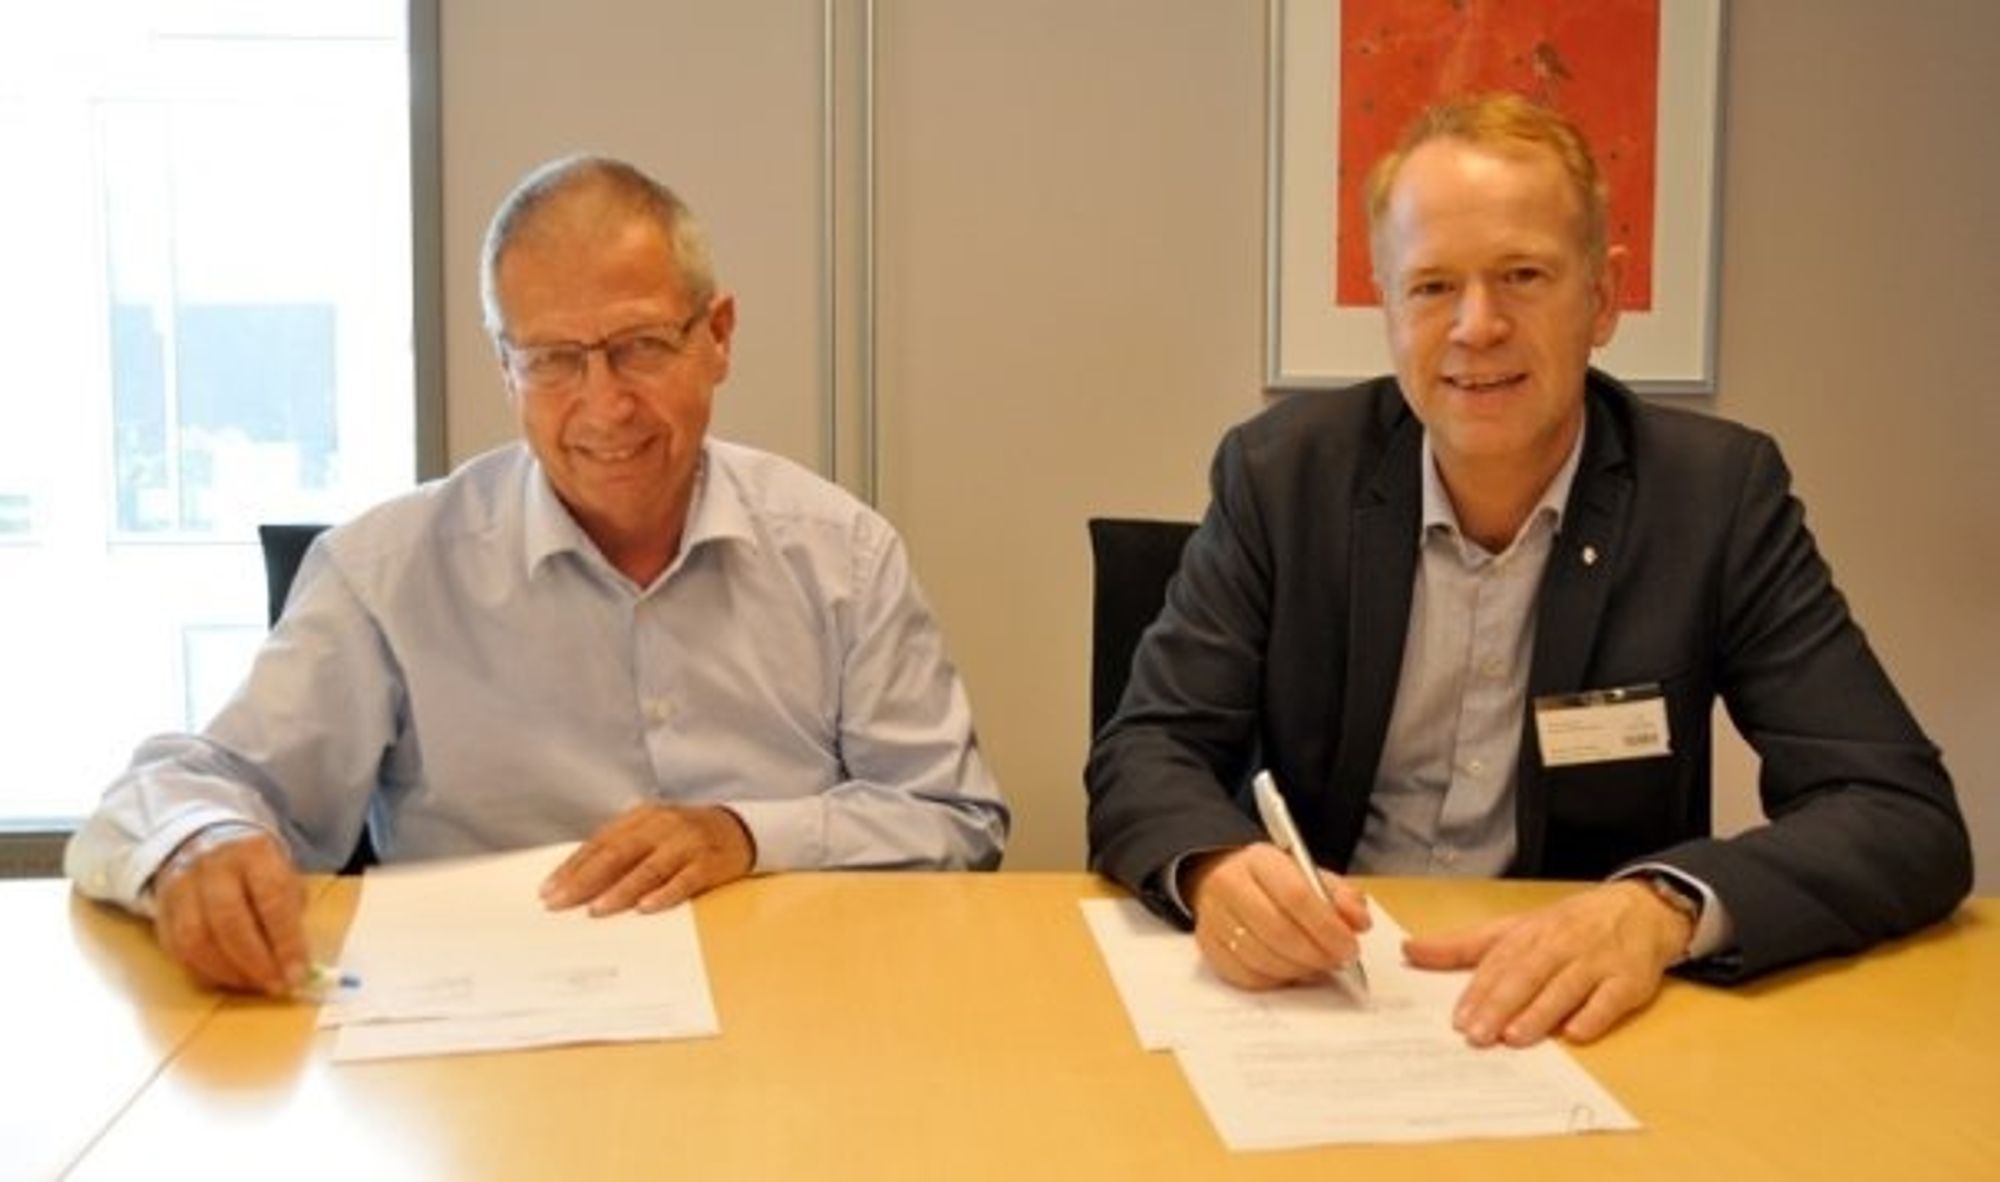 Vegdirektør Terje Moe Gustavsen og direktør Øivind Strømme i Skatteetatens regionavdeling signerte avtalen som skal bedre arbeidet mot arbeidsmarkedskriminalitet.